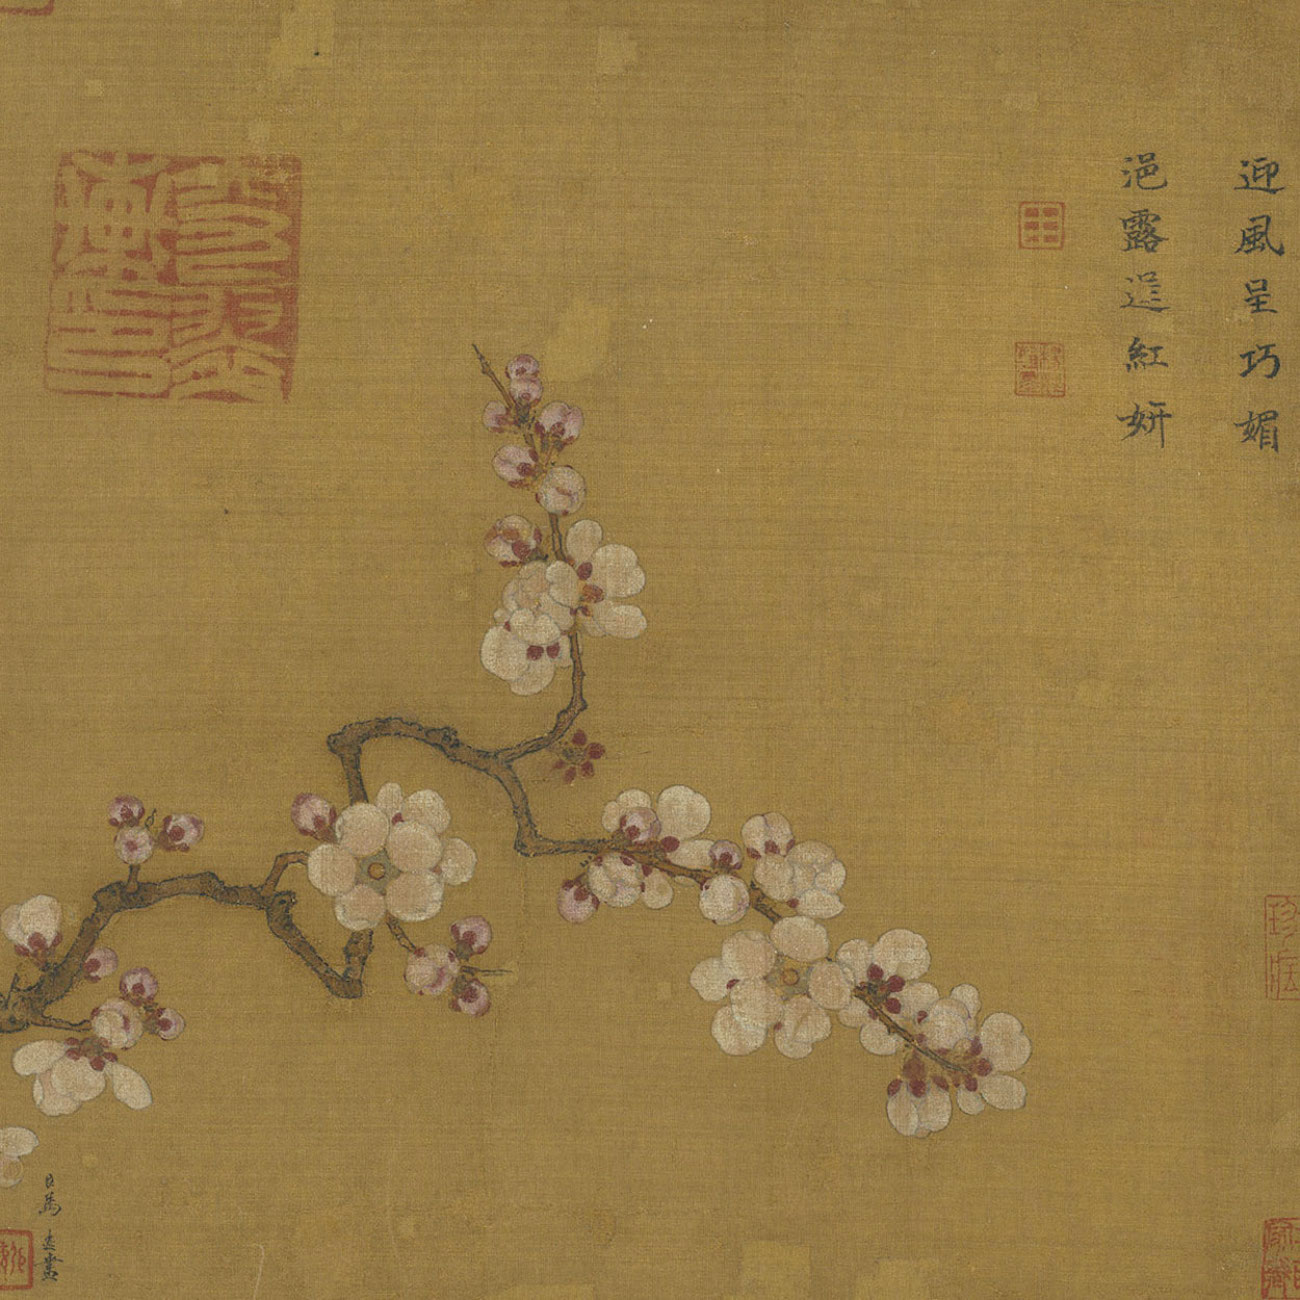 杏花 by 远 马 - 1202 - 25.8 x 27.3 cm 